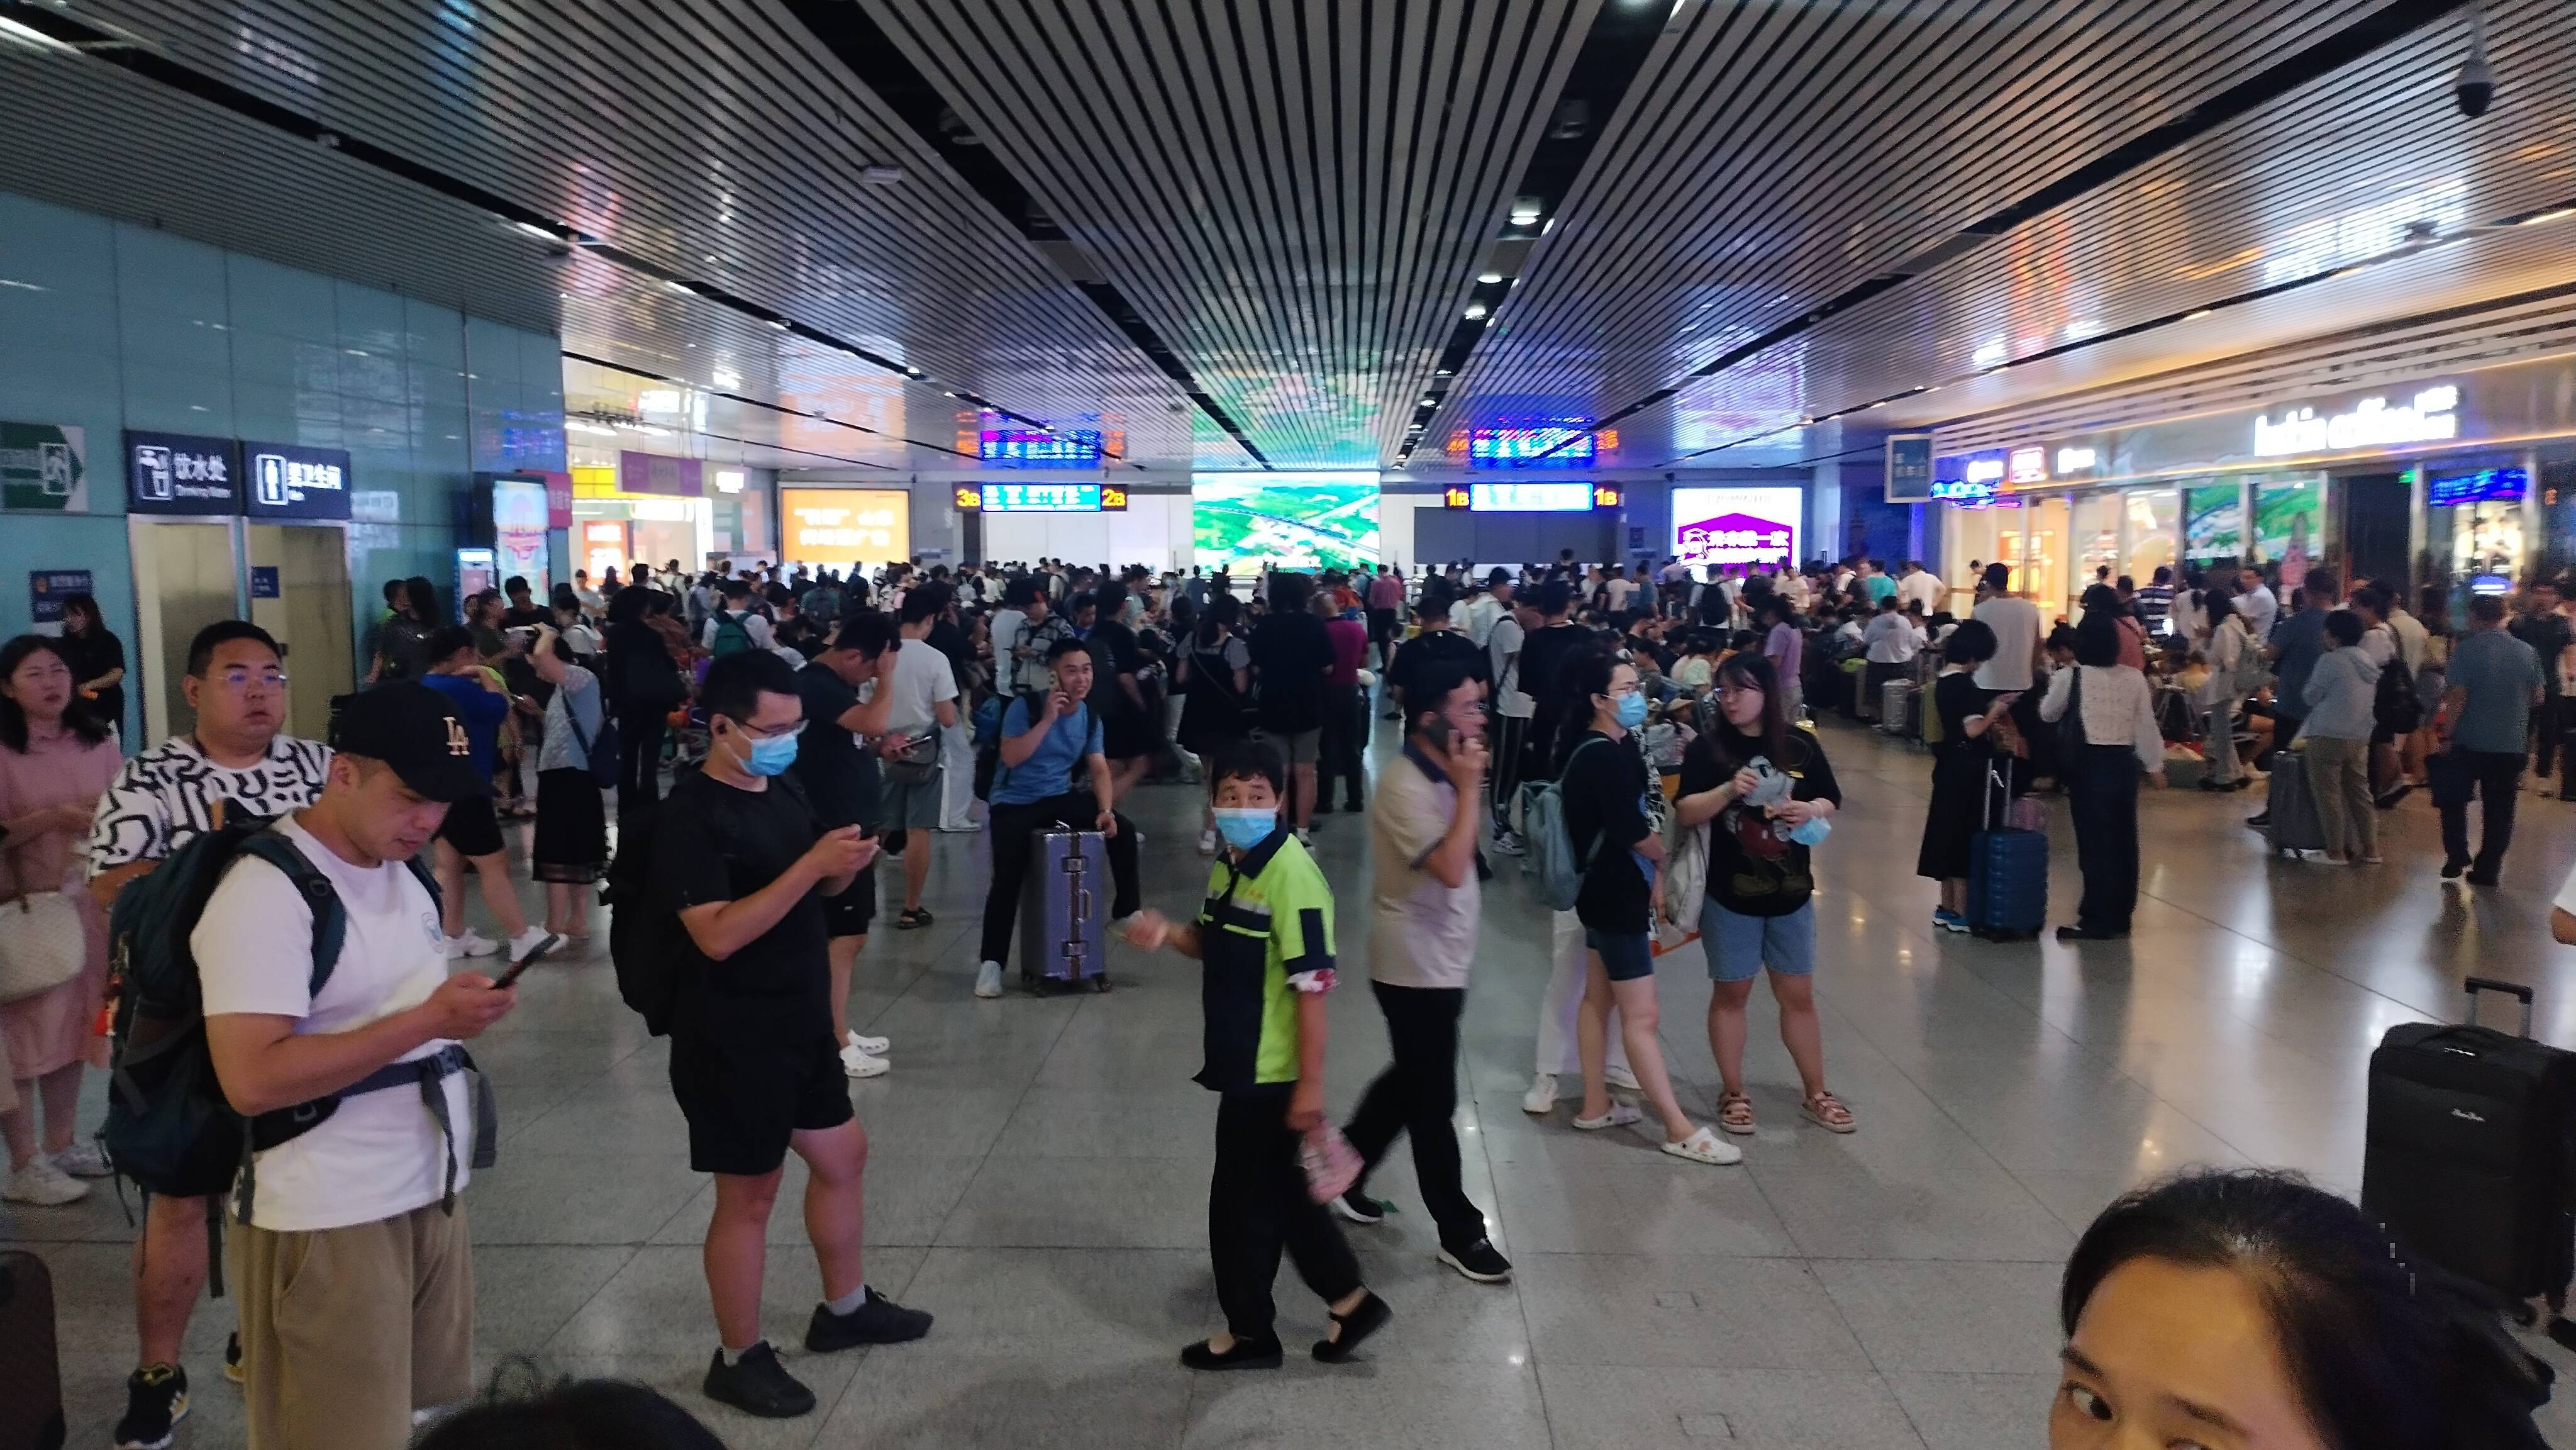 地震导致北京、山东多趟列车停运 涉及京沪高铁、石济客专等线路